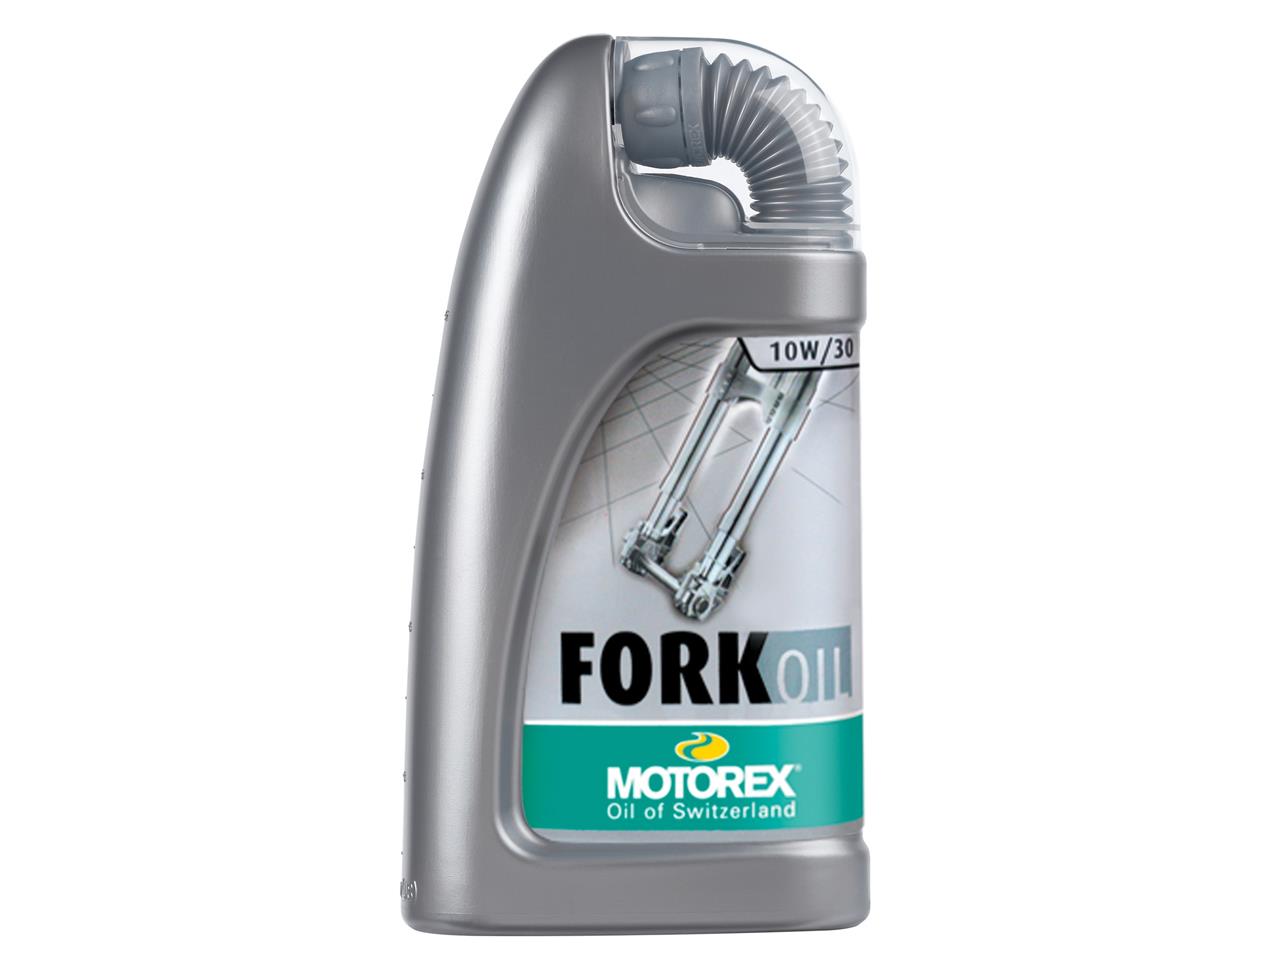 Huile Motorex Fork Oil 10W30 1 litre